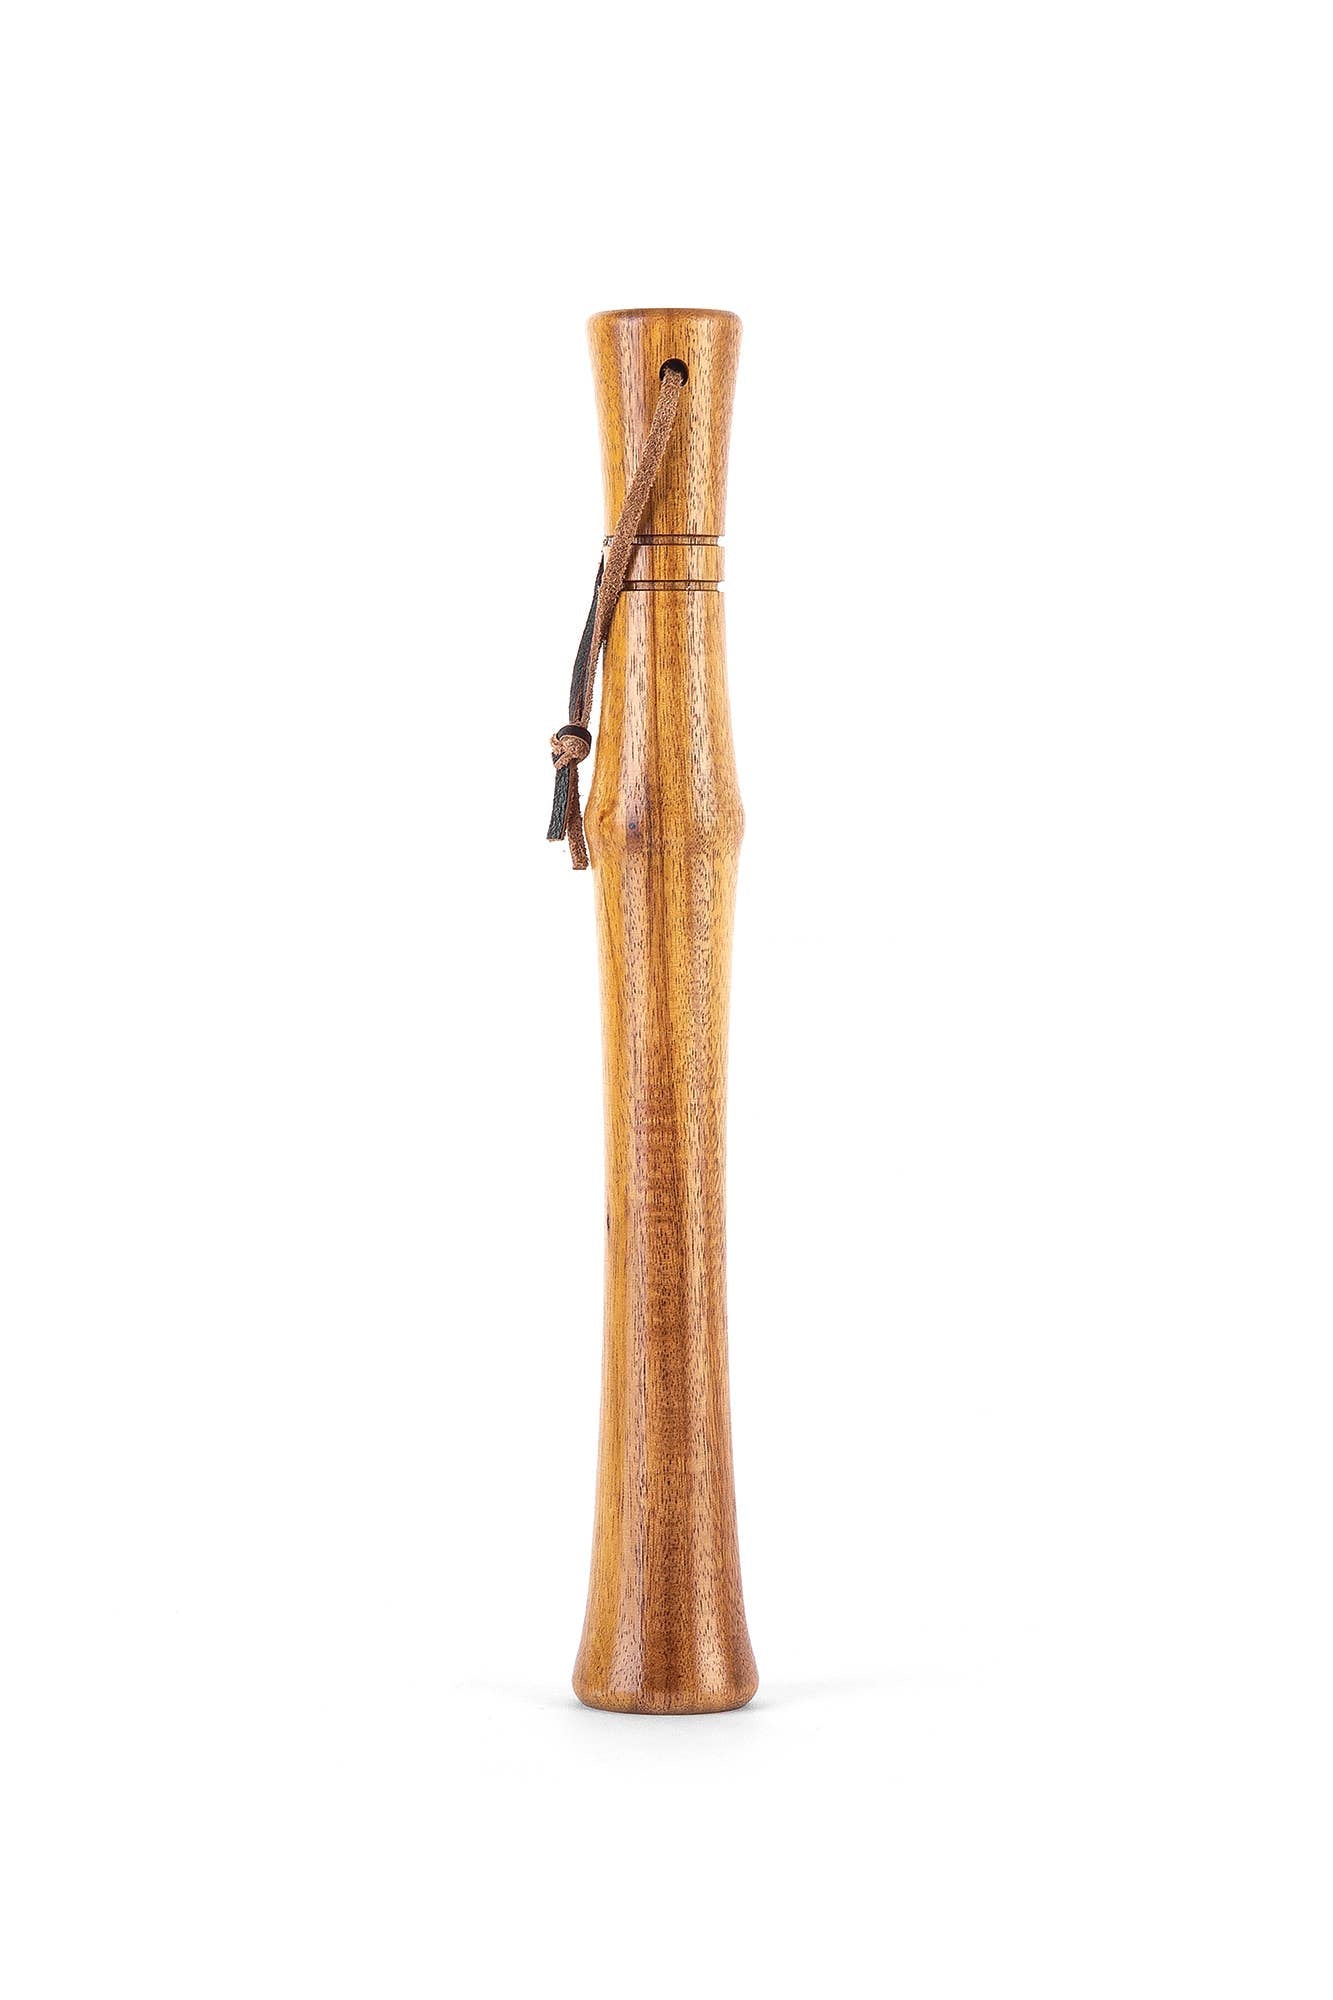 Acacia Wood Cocktail Muddler, 11-inch, Natural